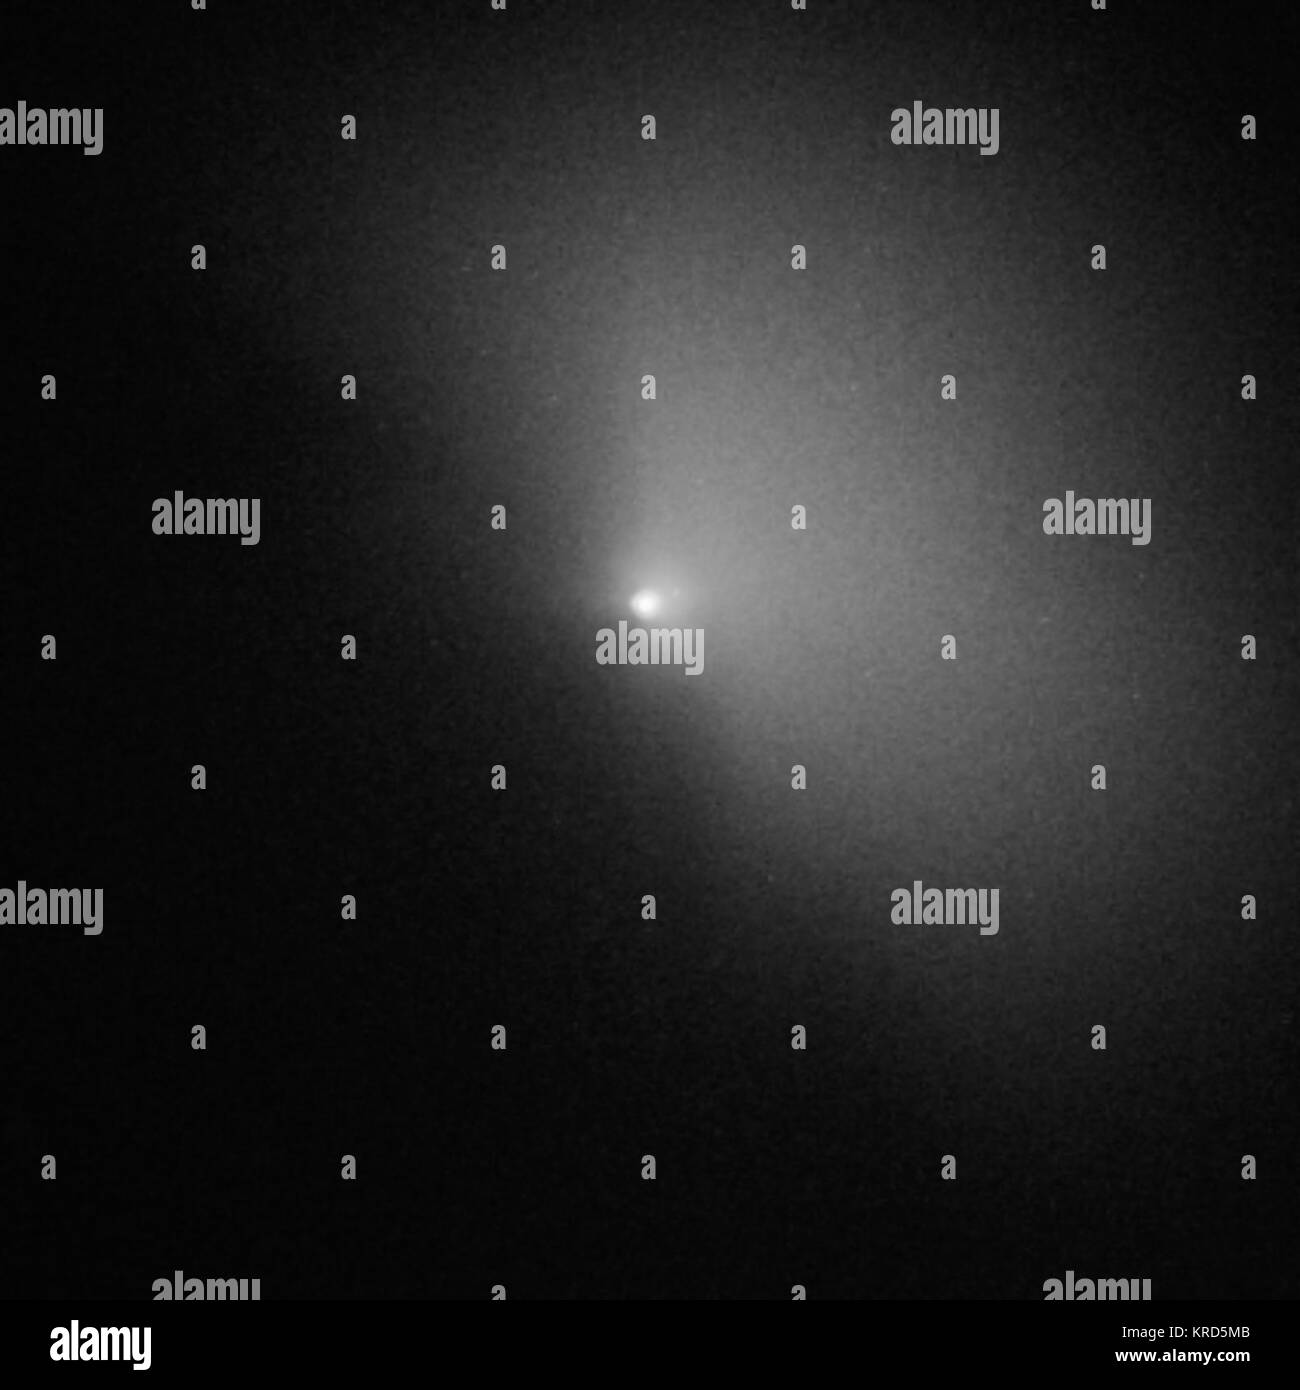 Komet Tempel 1 - 4 Stunden, 41 Minuten nach Deep Impact Kollision Stockfoto